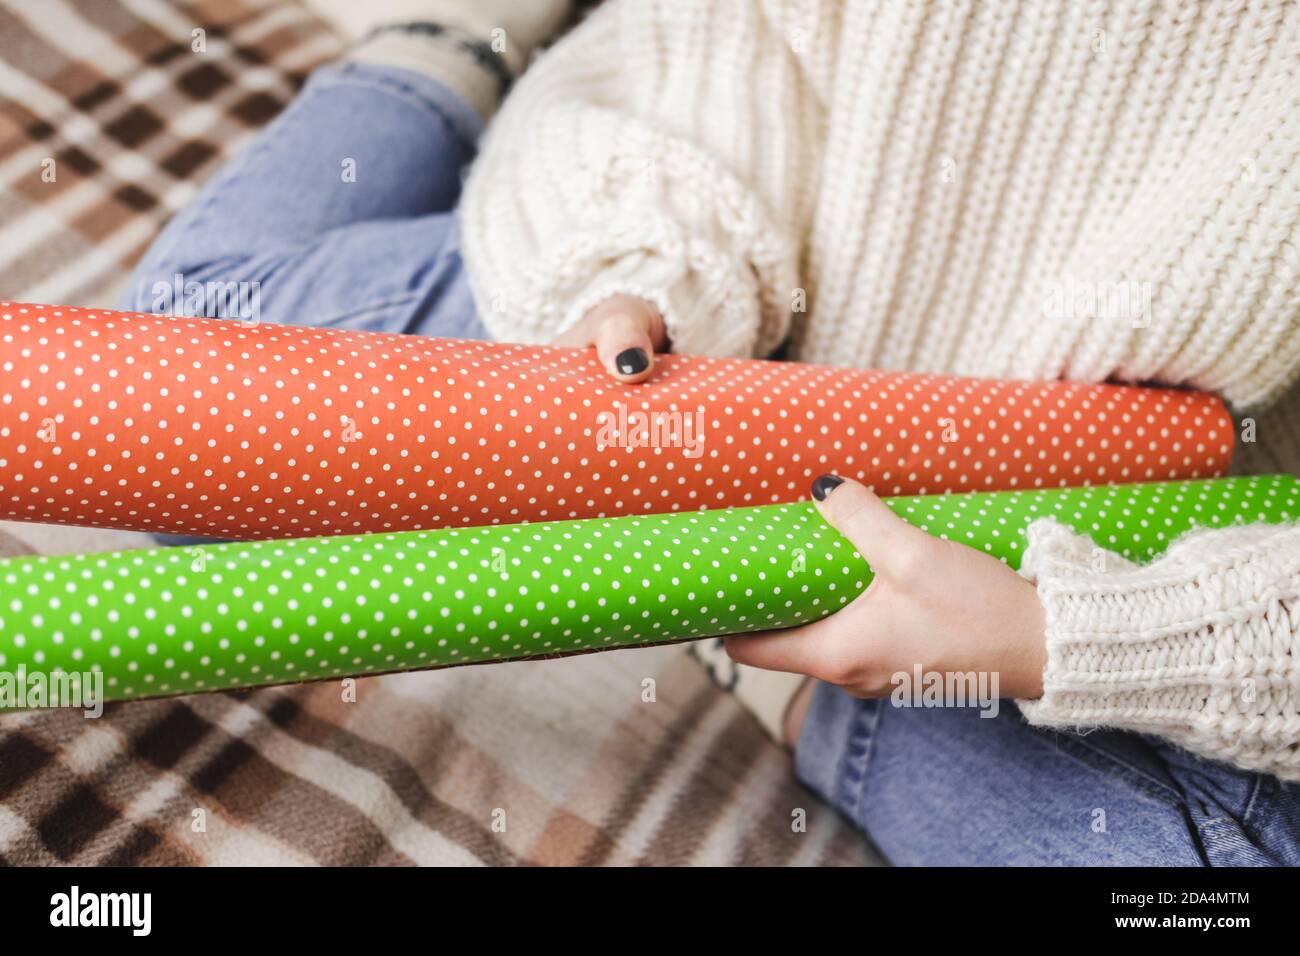 Giovane donna si siede su plaid in maglia accogliente pullover bianco lana, calzini e avvolge regalo di Natale in polka dot wrapping carta. Vassoio in legno con tazza di co Foto Stock